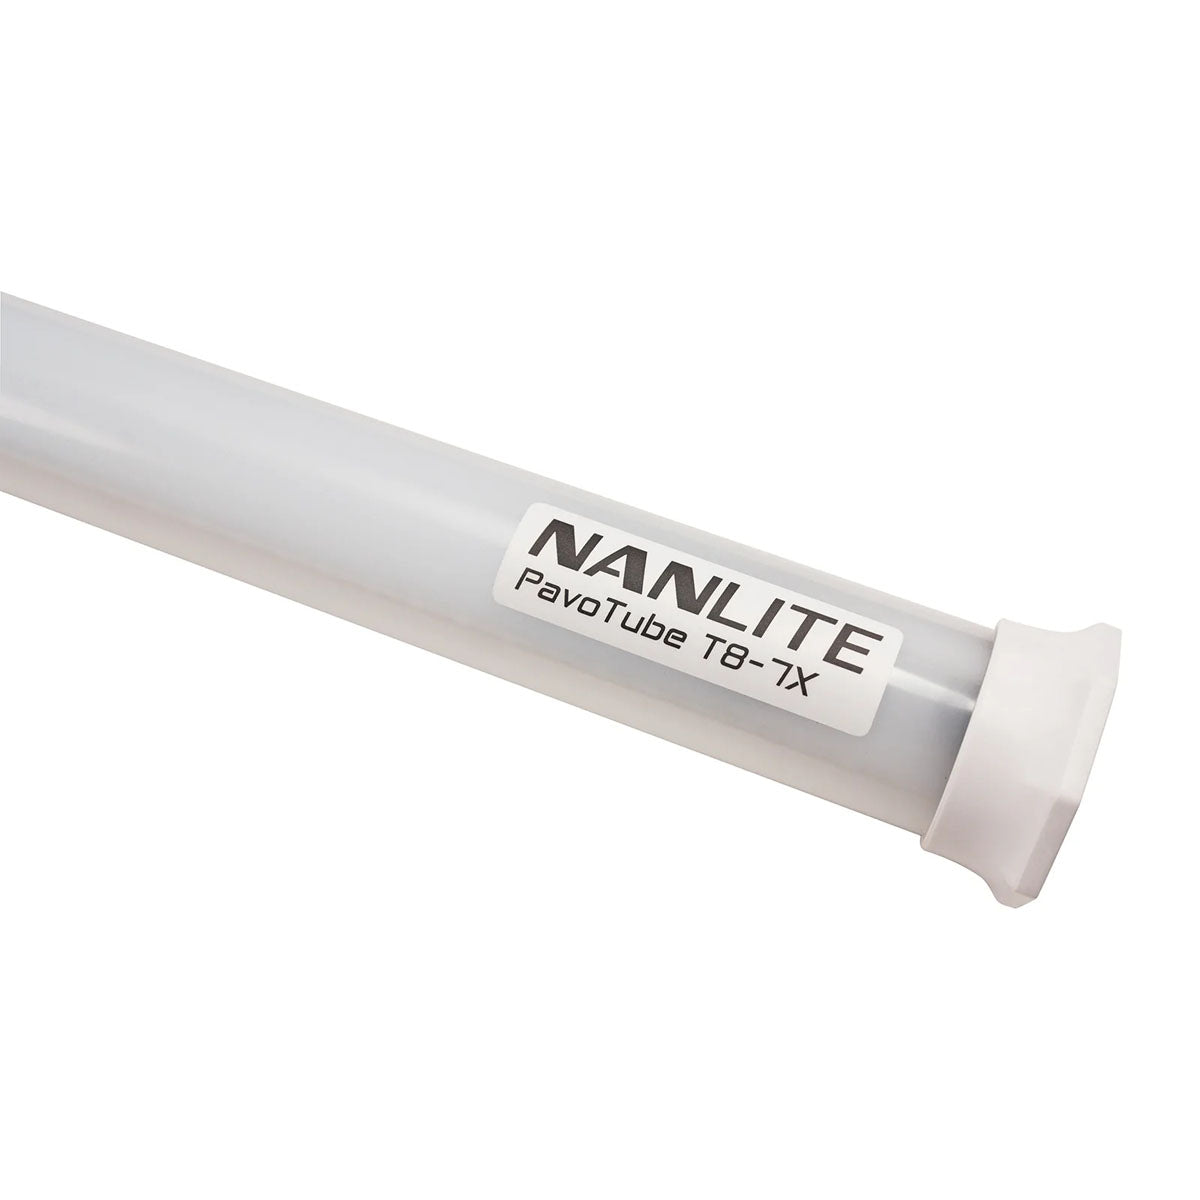 NANLITE(ナンライト) LEDライト Pavotube T8-7X 4kit (15-2024-4KIT)